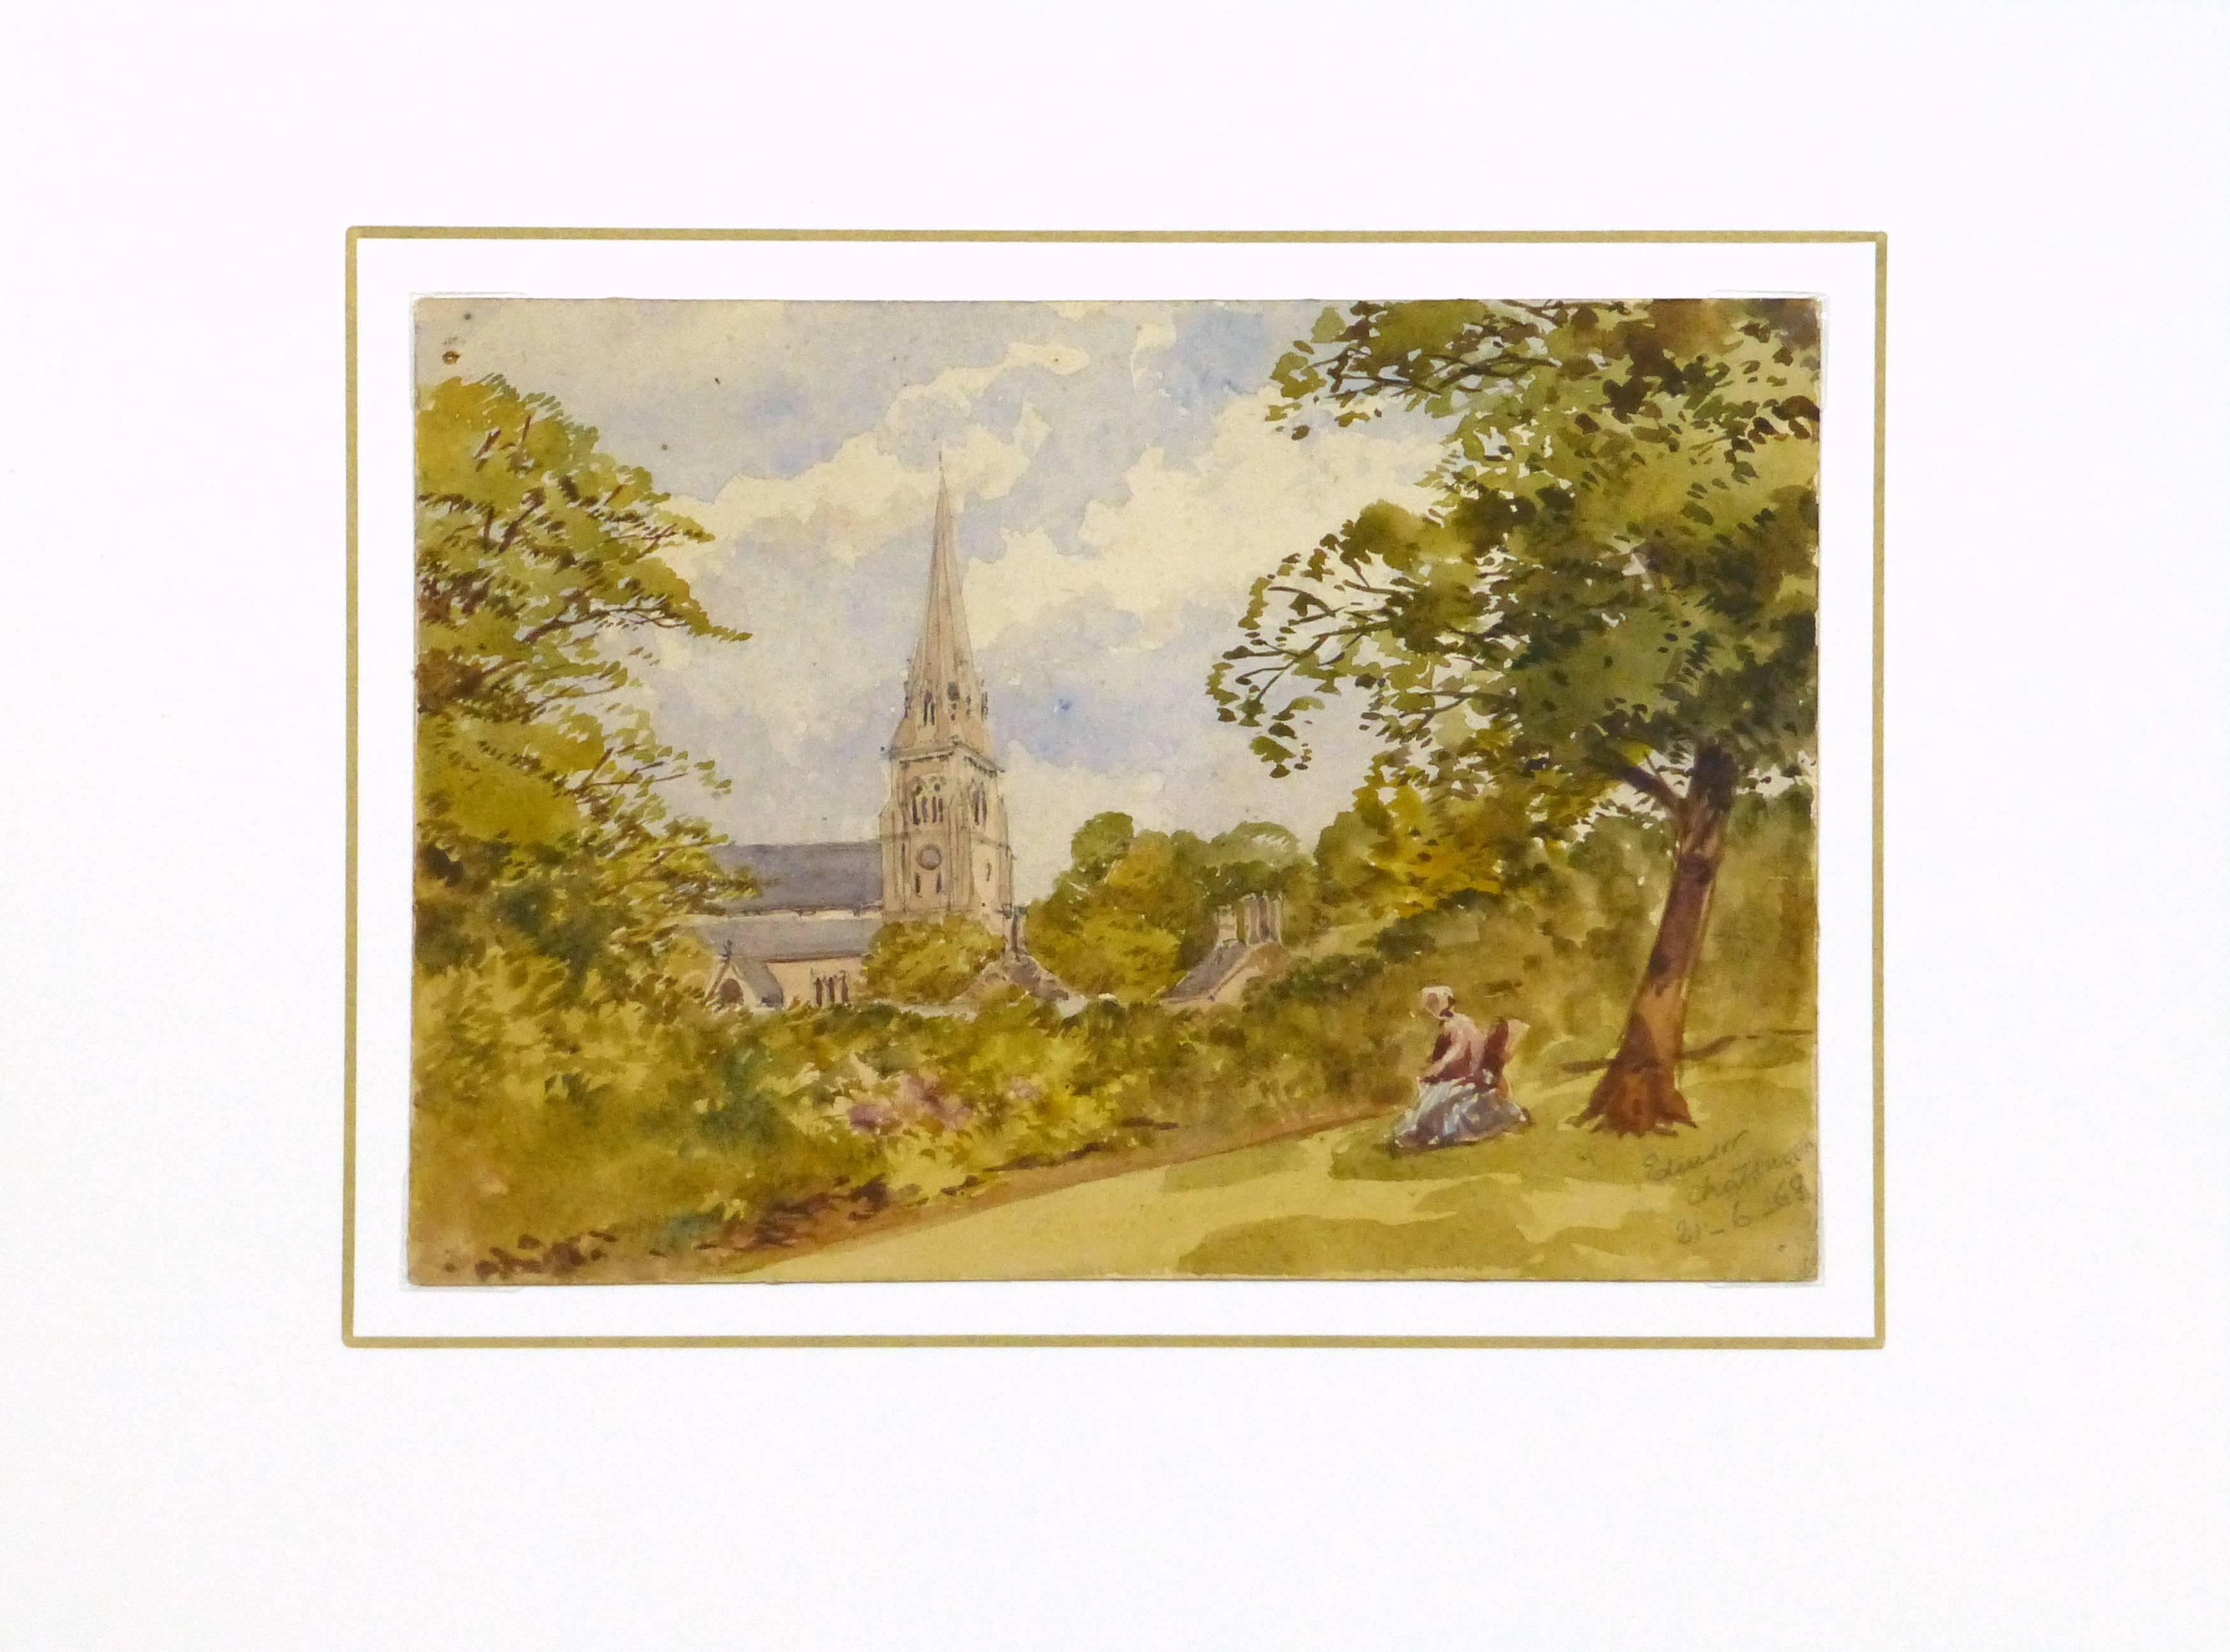 Verträumte antike Aquarelllandschaft mit einer malerischen Szene eines Kirchturms, der sich aus dem Laub erhebt, während sich eine weibliche Figur im Schatten eines nahen Baumes ausruht, vom Künstler Edensor Chatsworth, 1868. Signiert und datiert